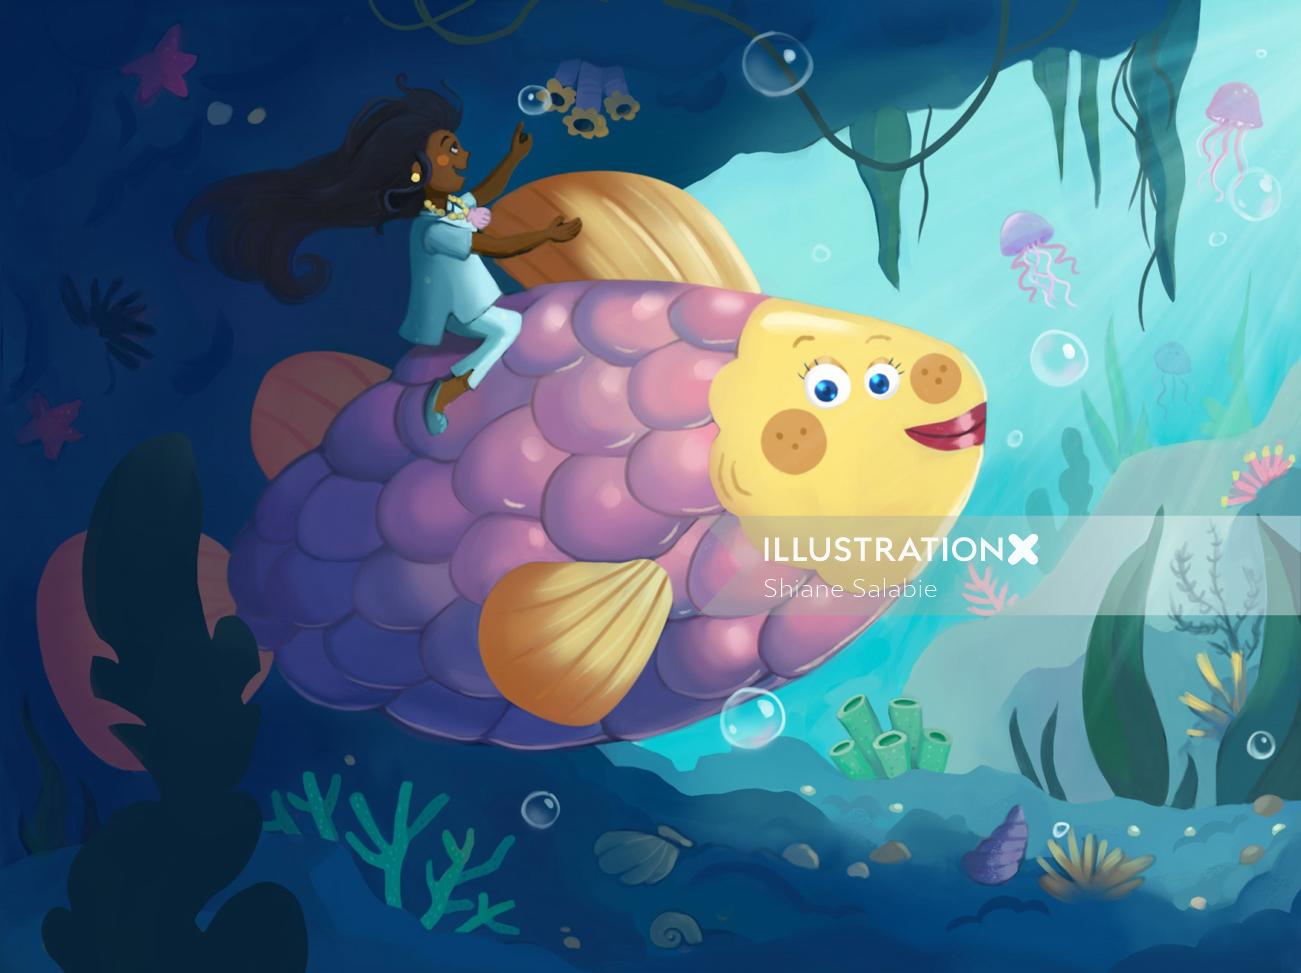 Ilustração da fantasia de uma garota cavalgando um peixe